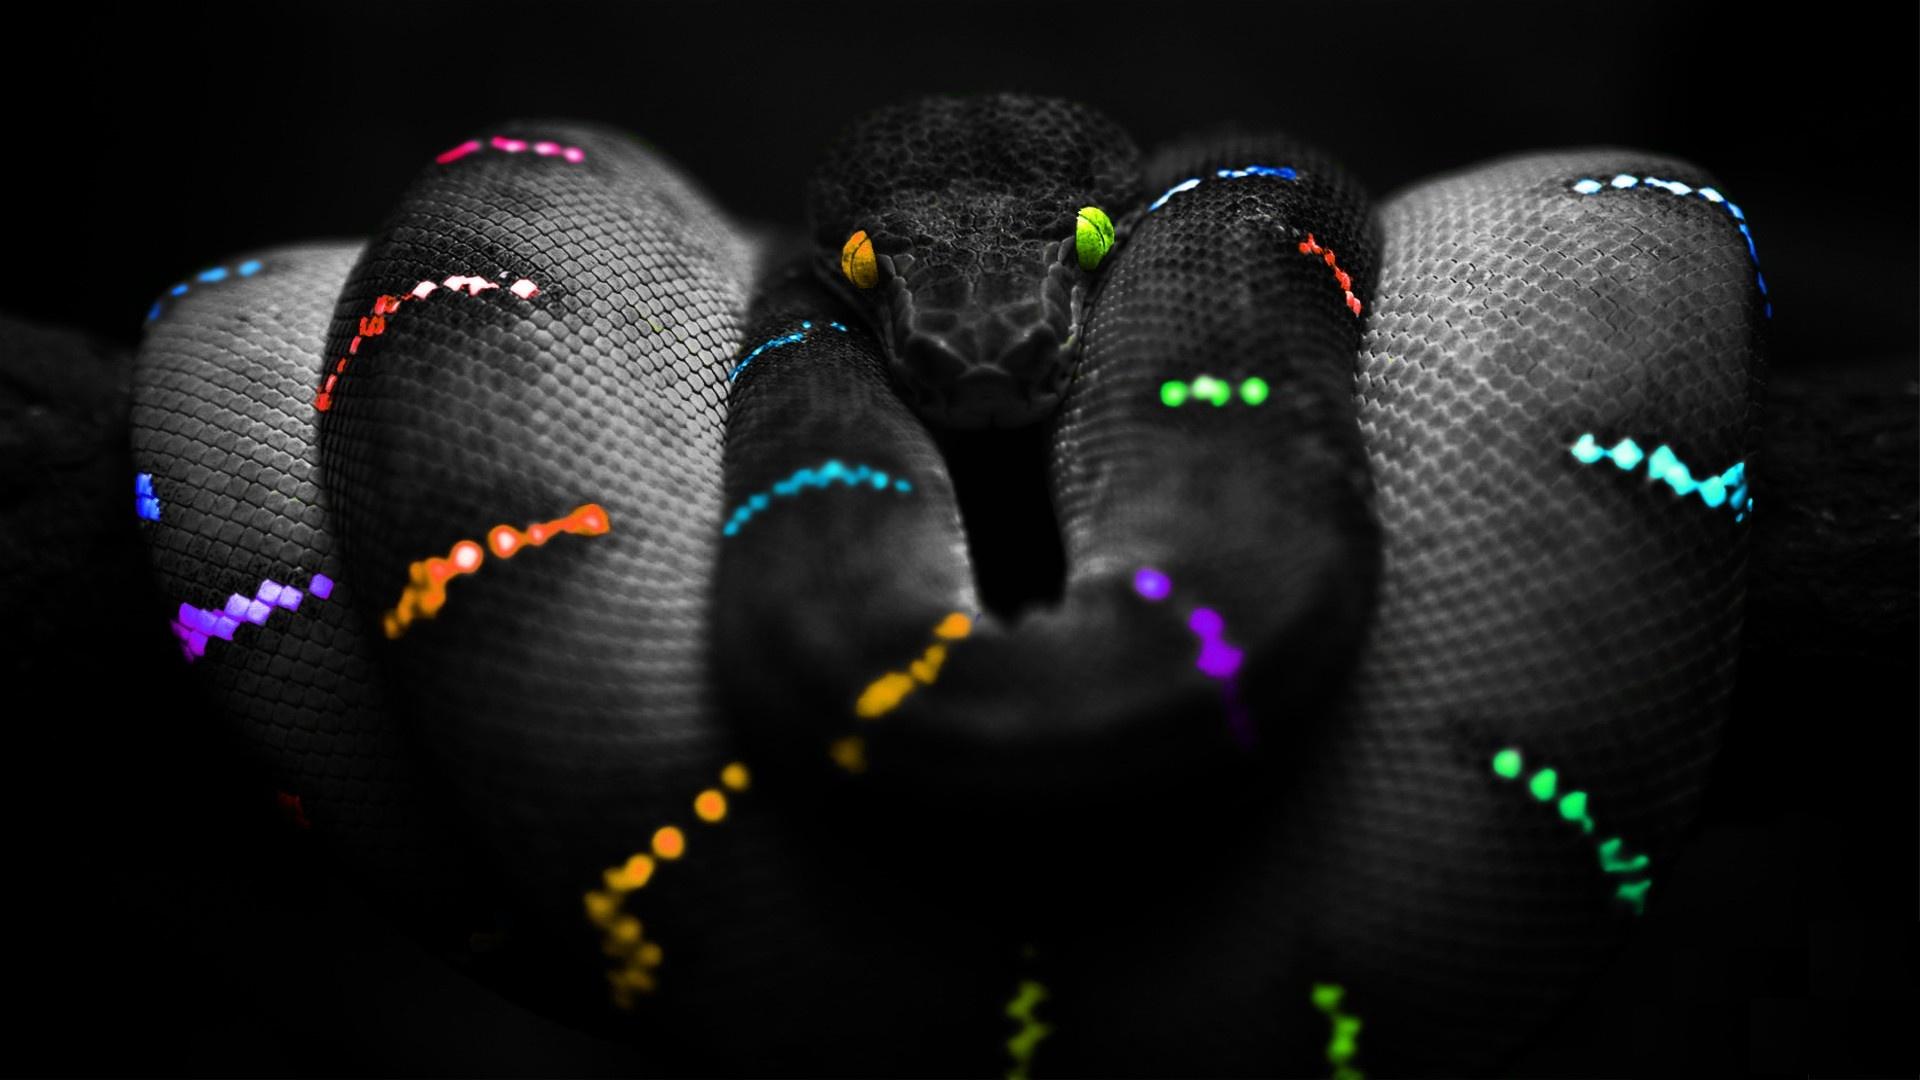  Snake HQ Background Images